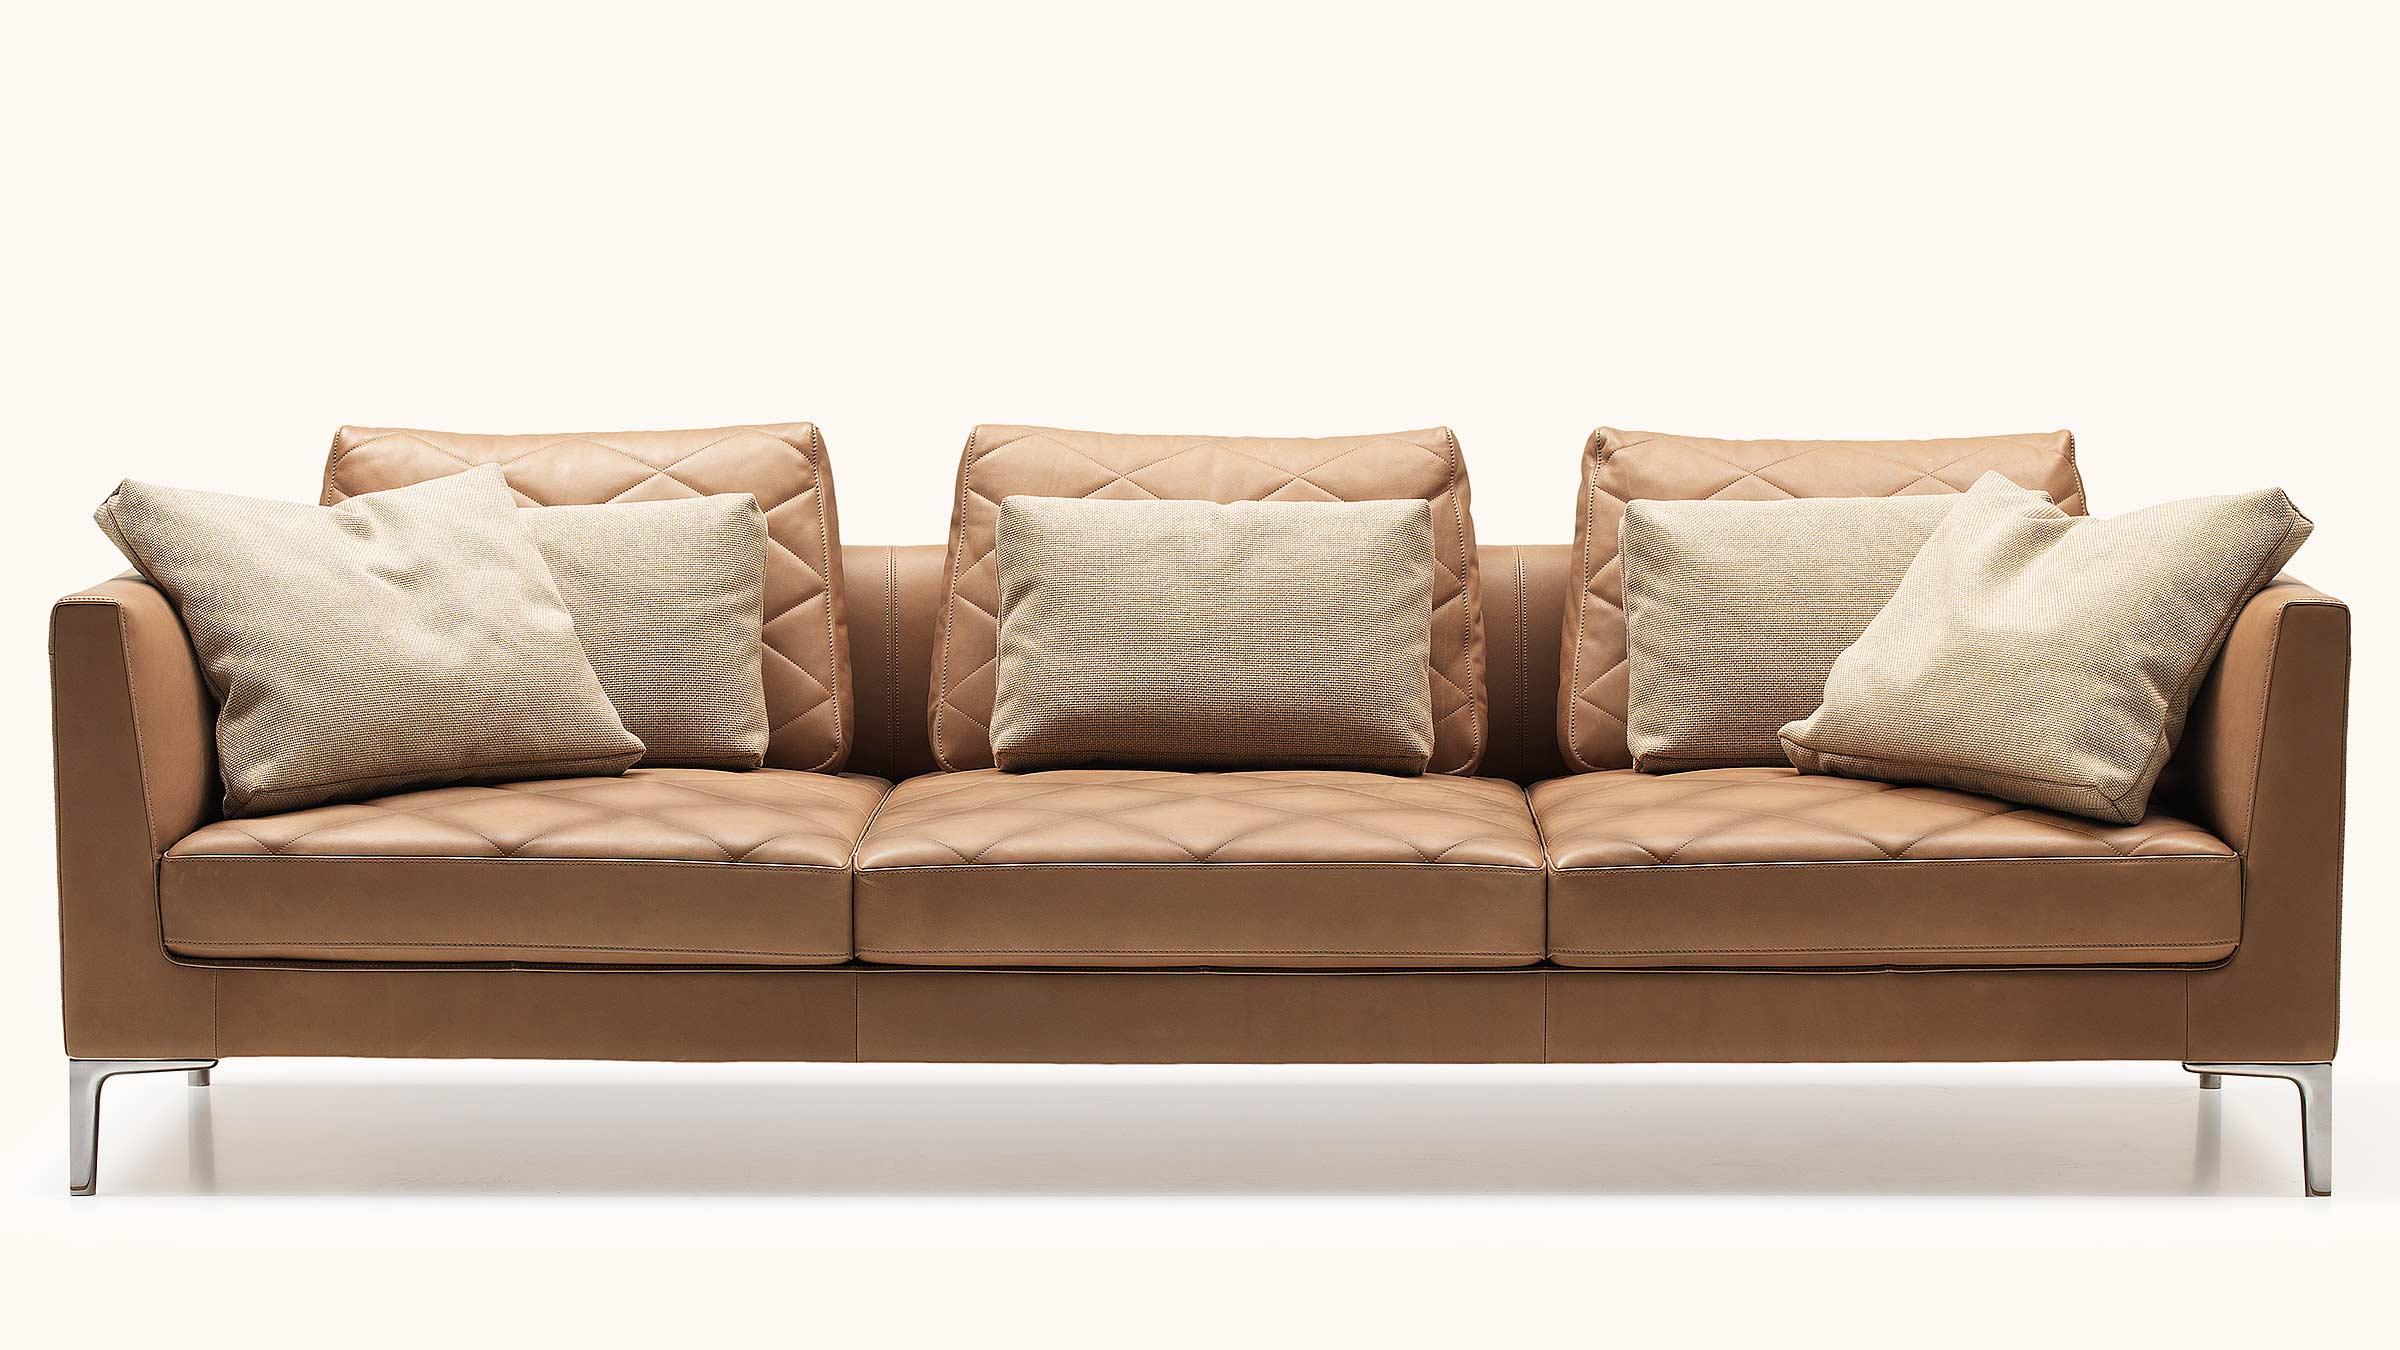 Erhältlich als Sofa, Sessel, Hocker oder Recamiere, ermöglicht der DS-48 das typische De Sede-Sitzerlebnis, das sich durch hohe Qualität und einzigartige Langlebigkeit auszeichnet. Lose Stoffkissen runden die Suche nach zeitloser Eleganz ab und